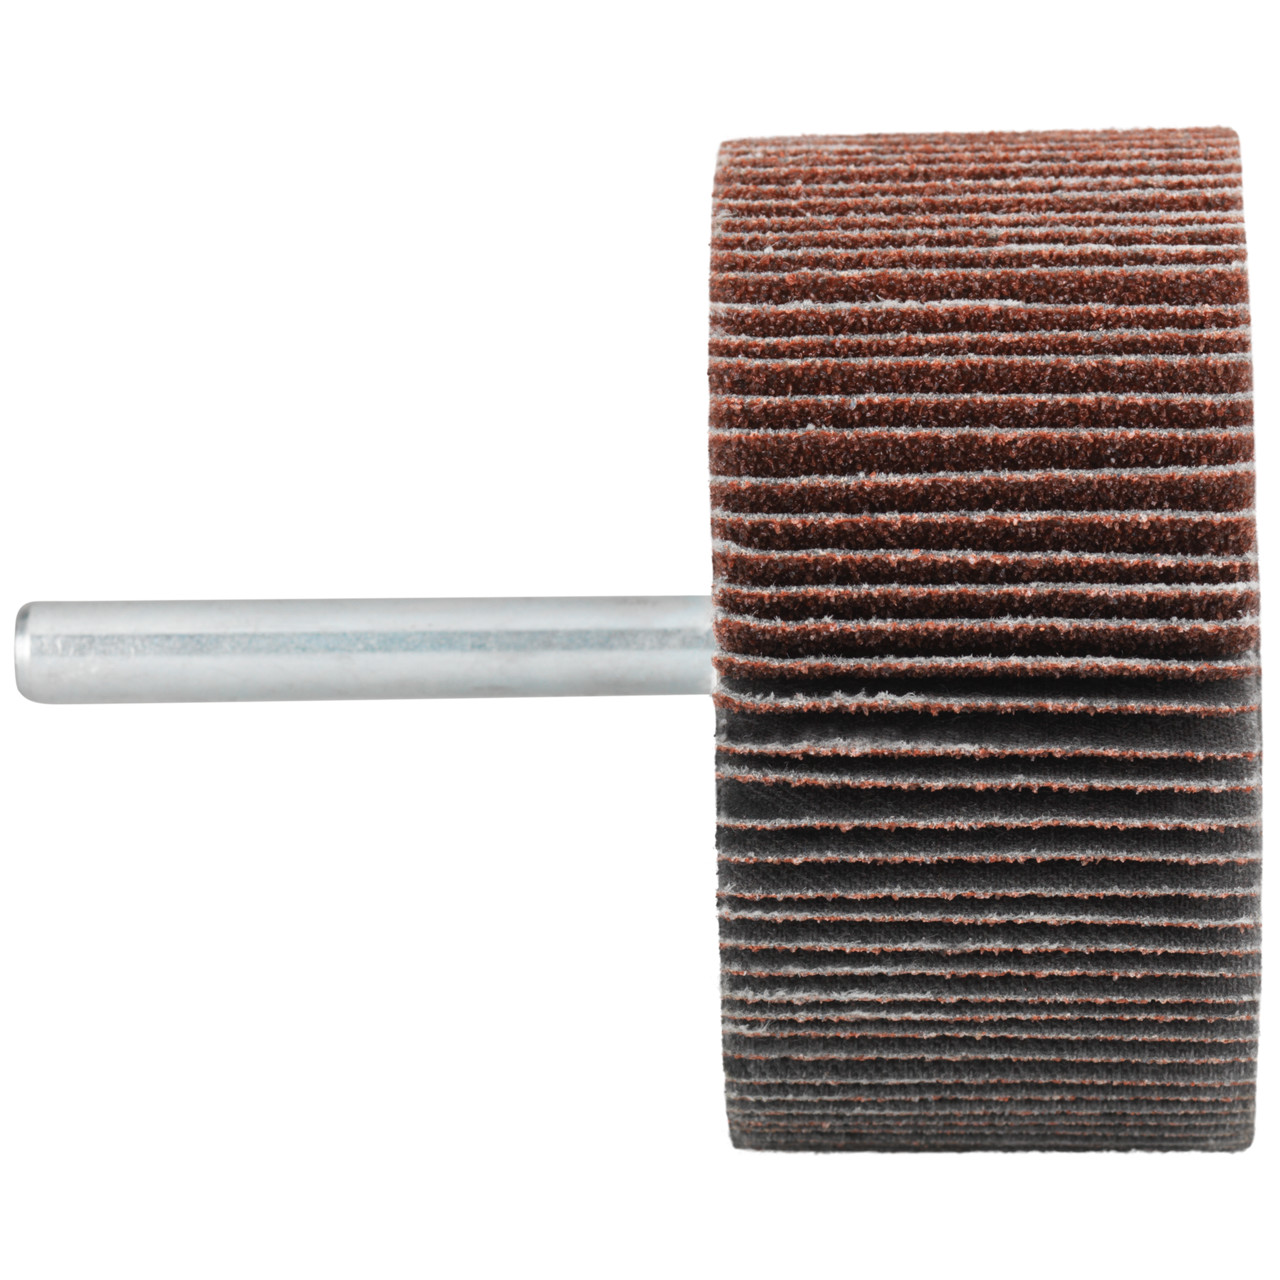 Tyrolit A-P01 C X Pennen DxD 60x30 Voor staal, roestvast staal en non-ferrometalen, P240, vorm: 52LA, Art. 816963